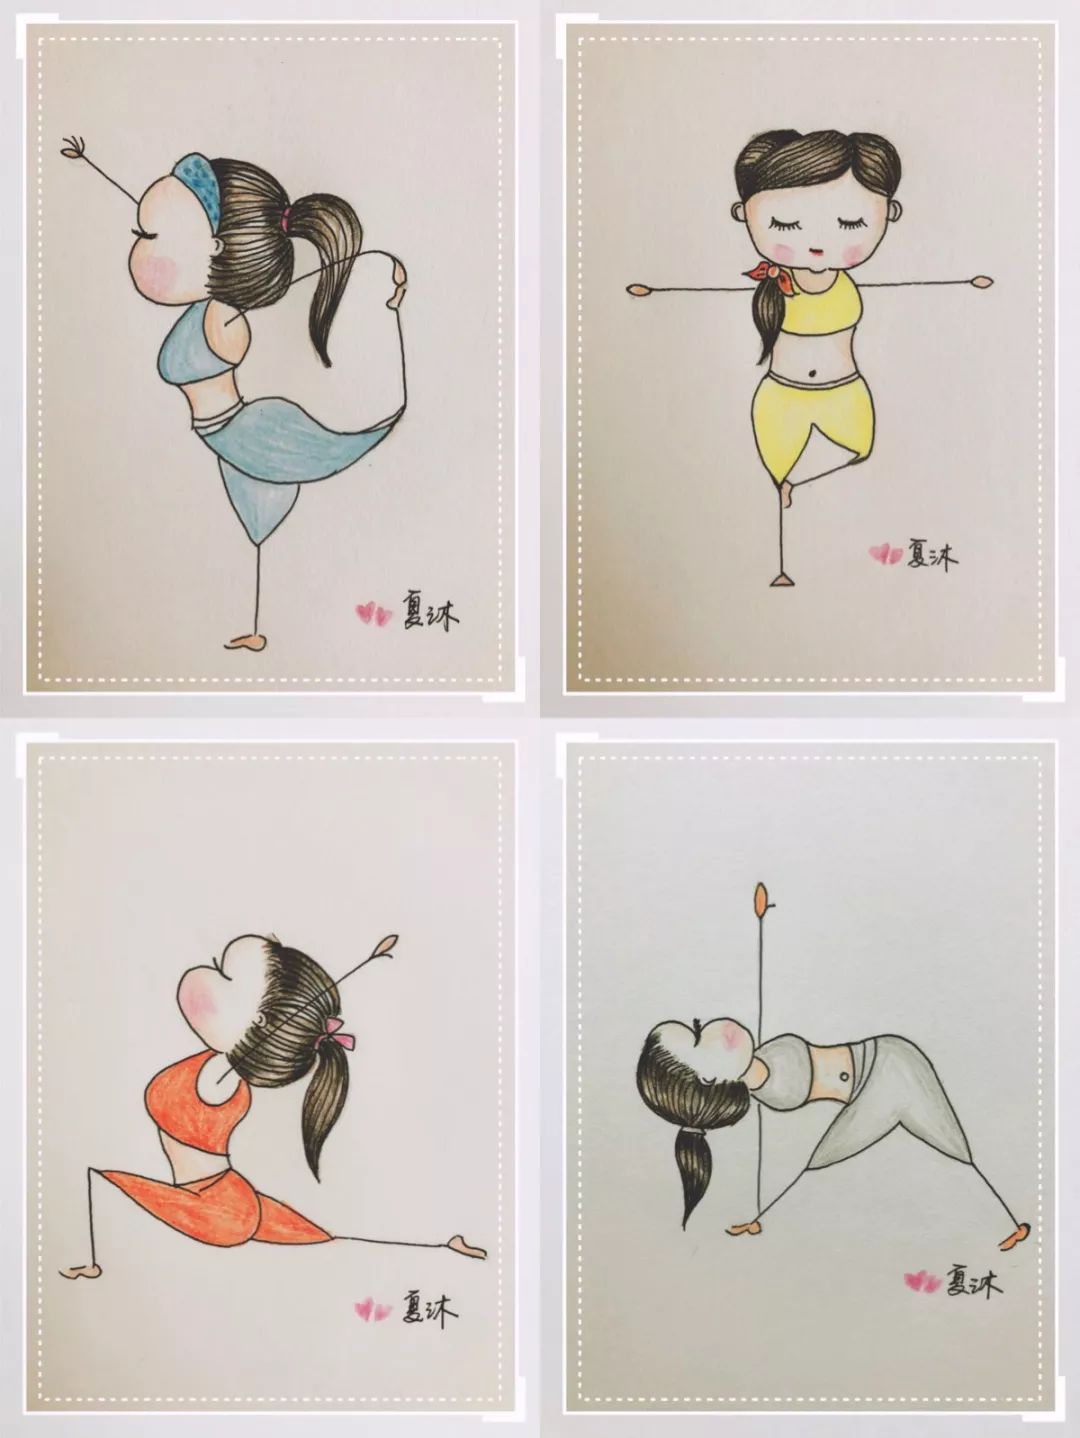 收藏版:超全瑜伽小人绘画及体式笔记攻略